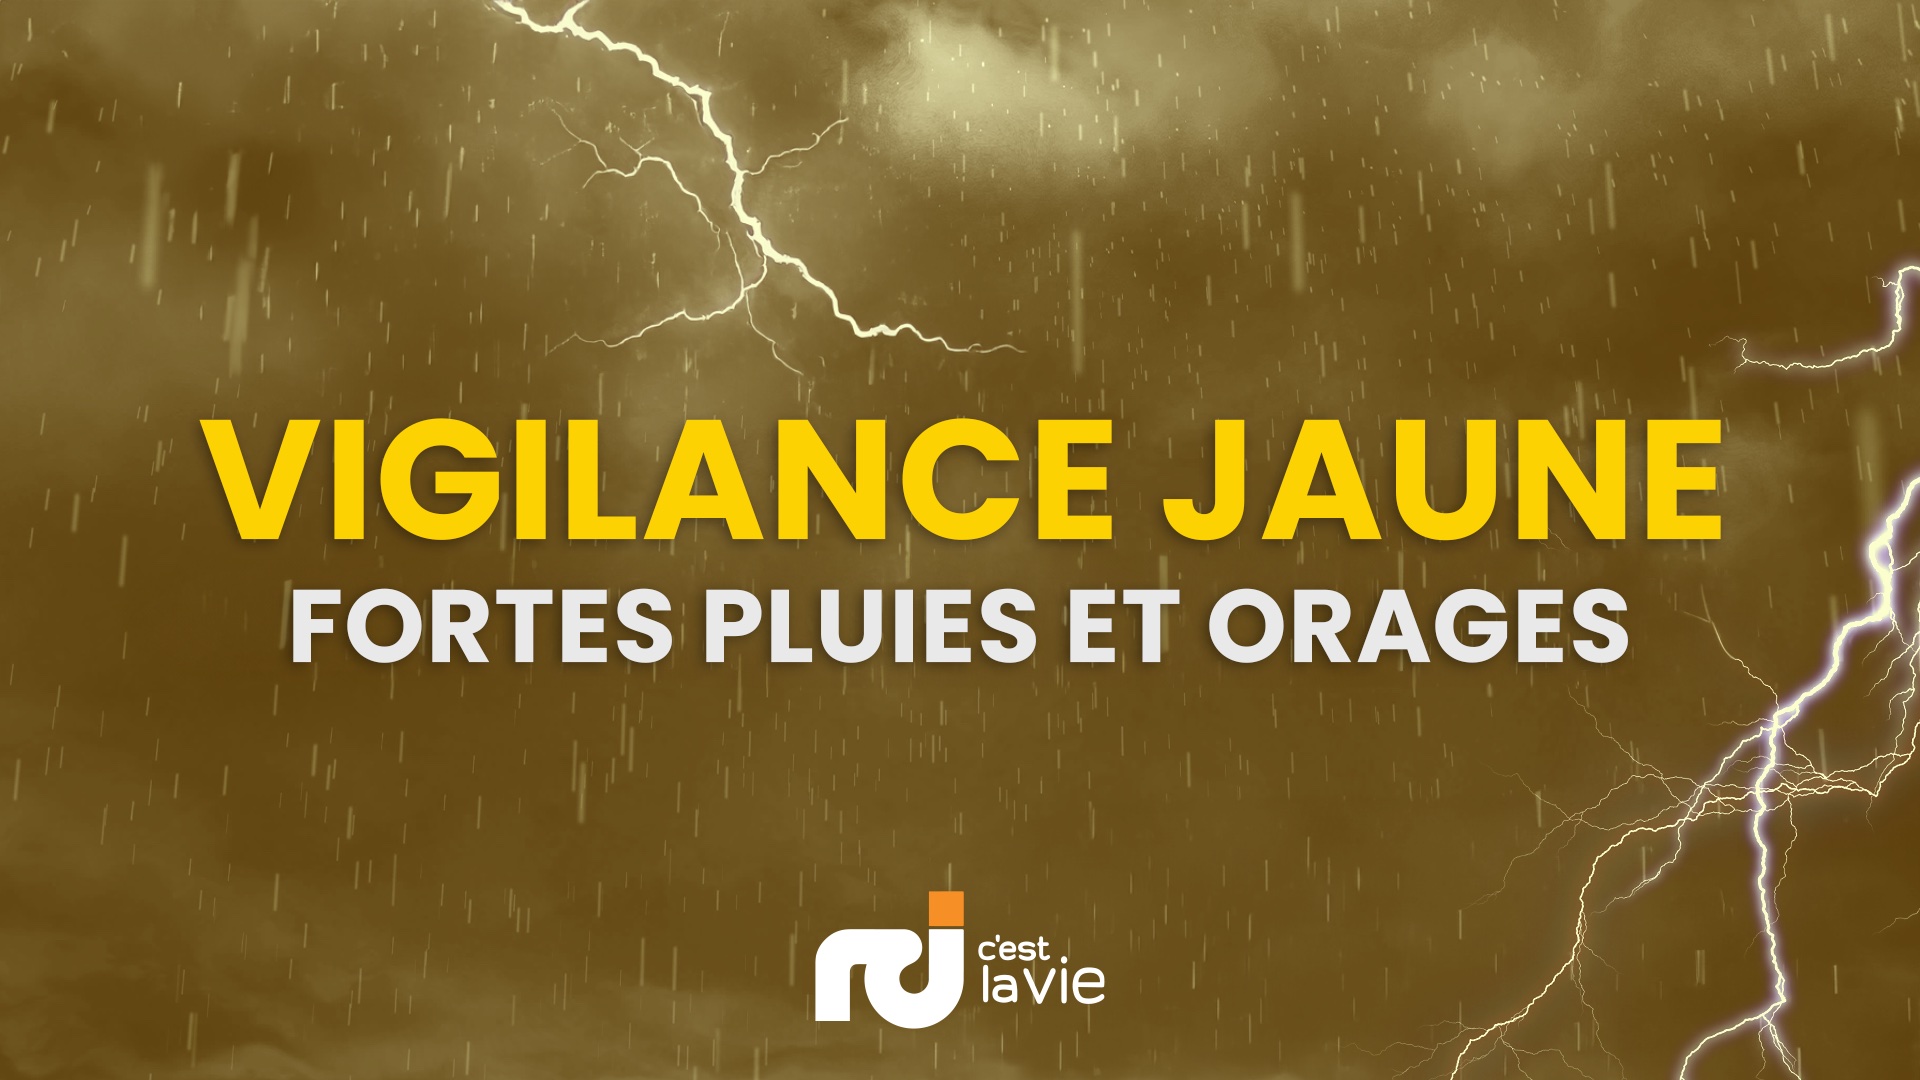     La Martinique en vigilance Jaune pour « fortes pluies et orages »

